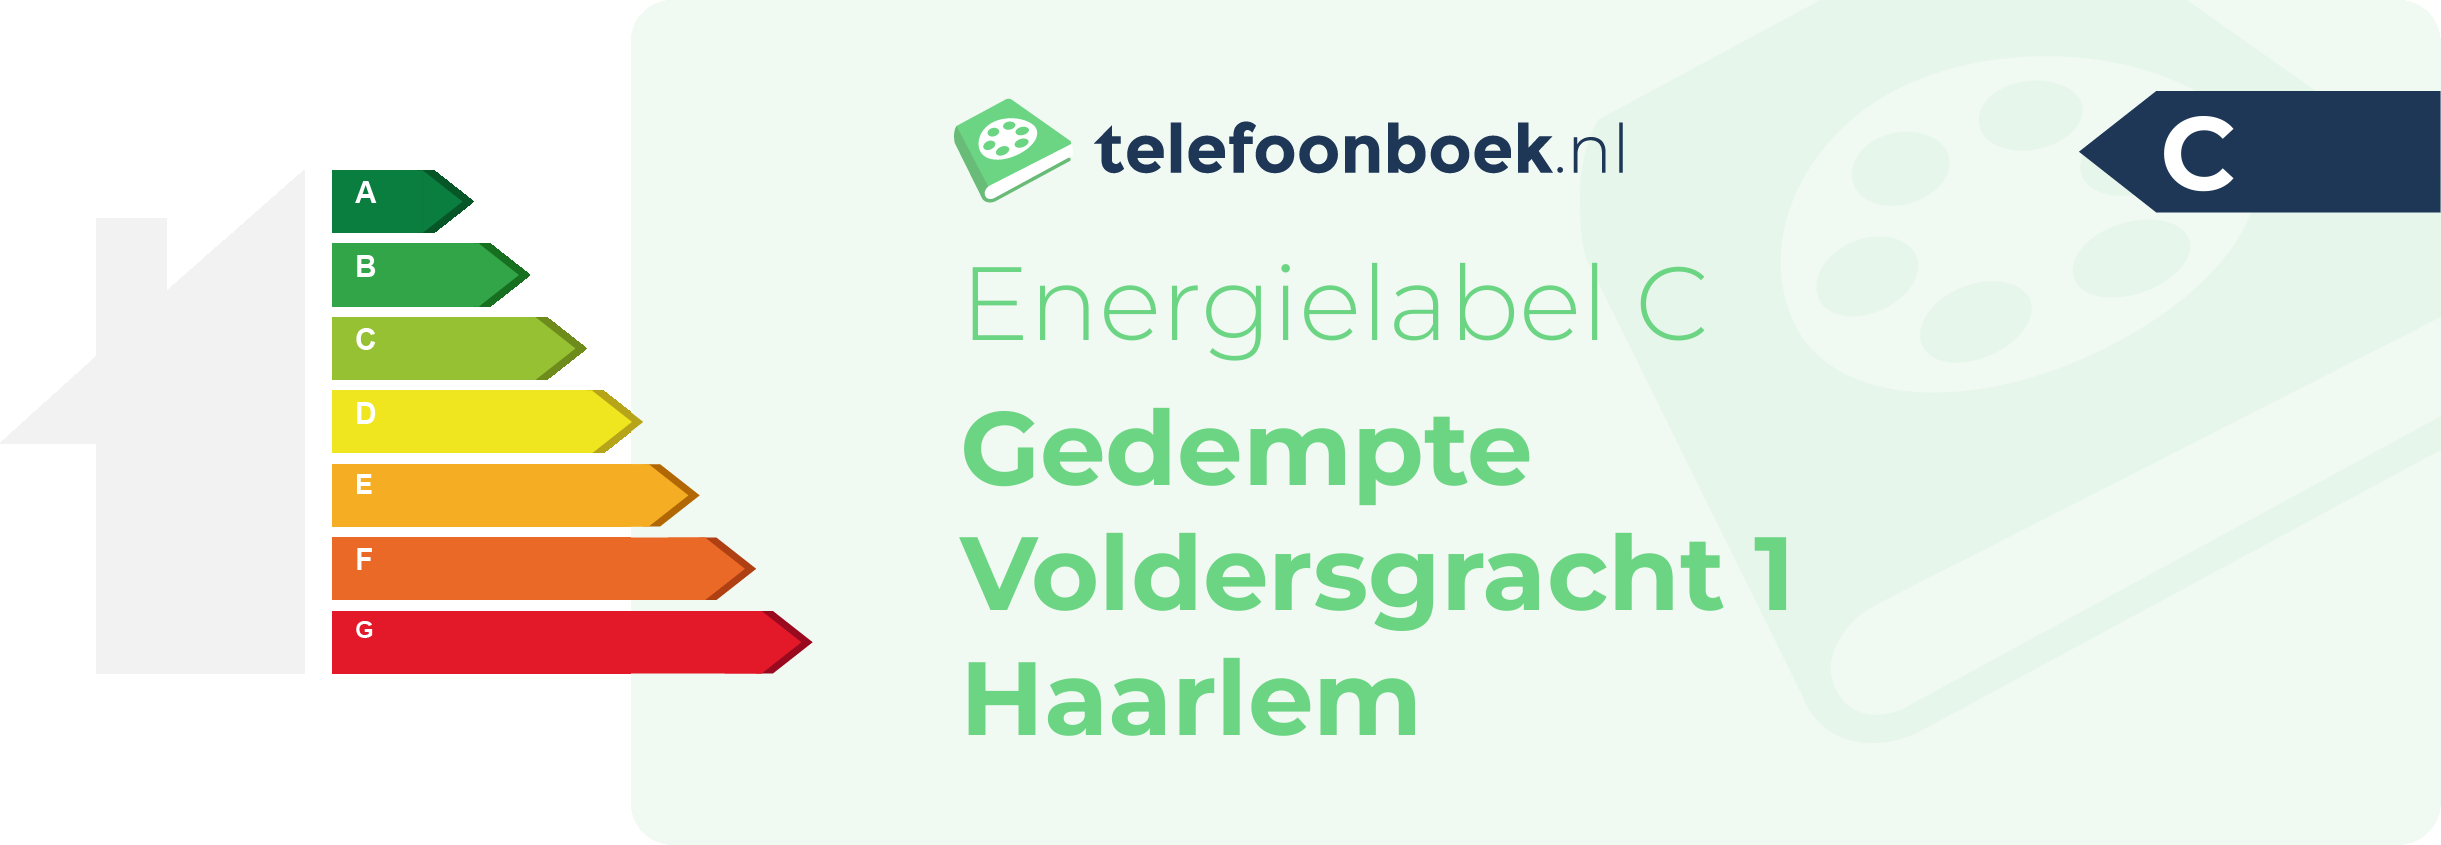 Energielabel Gedempte Voldersgracht 1 Haarlem